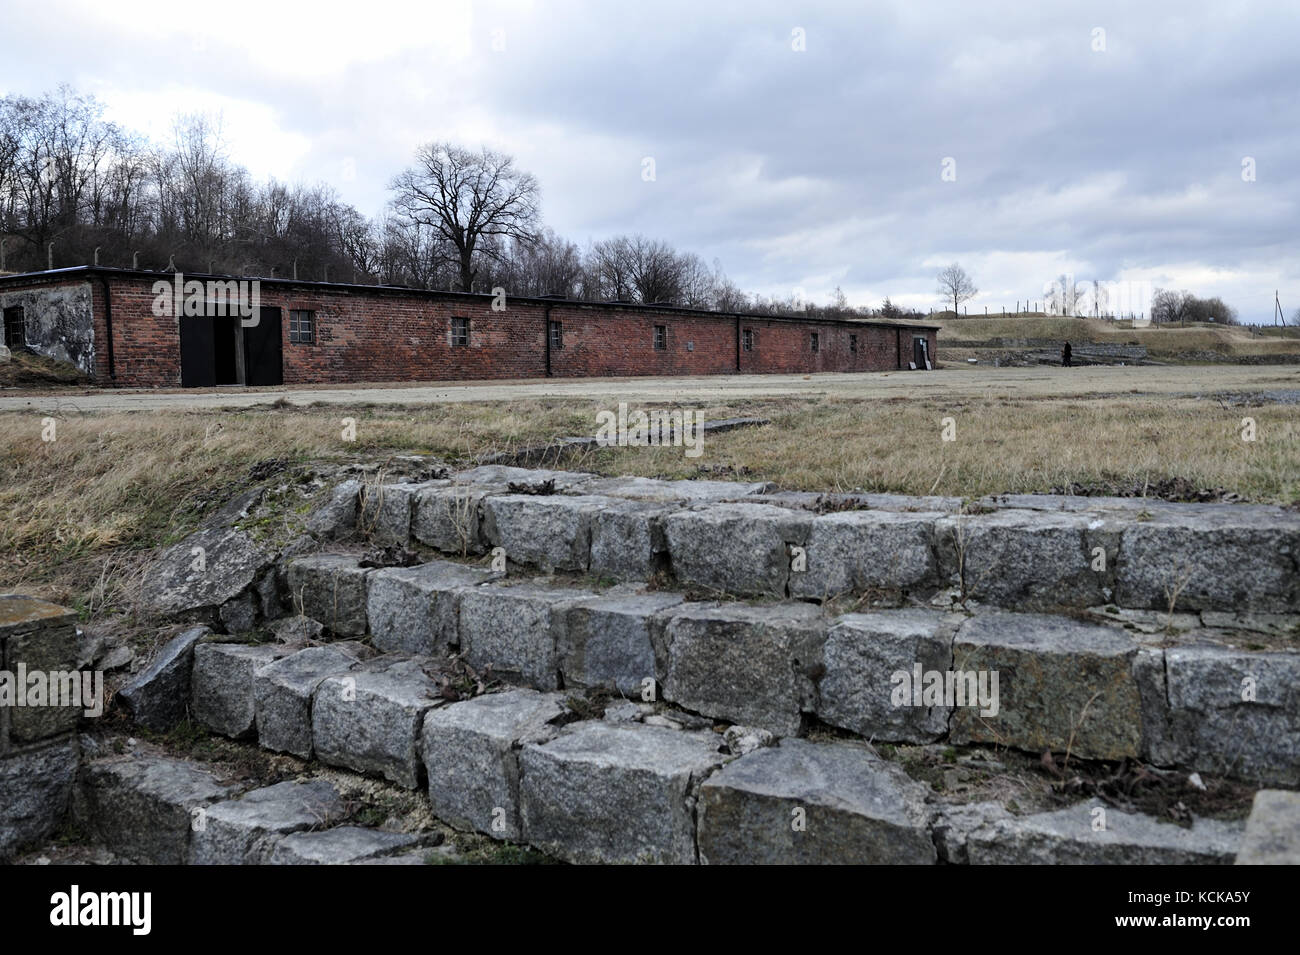 Campo de concentración nazi alemán, el exterminio en la Polonia ocupada, Hitler, campo de concentración, campos de exterminio en la Polonia ocupada alemán Foto de stock